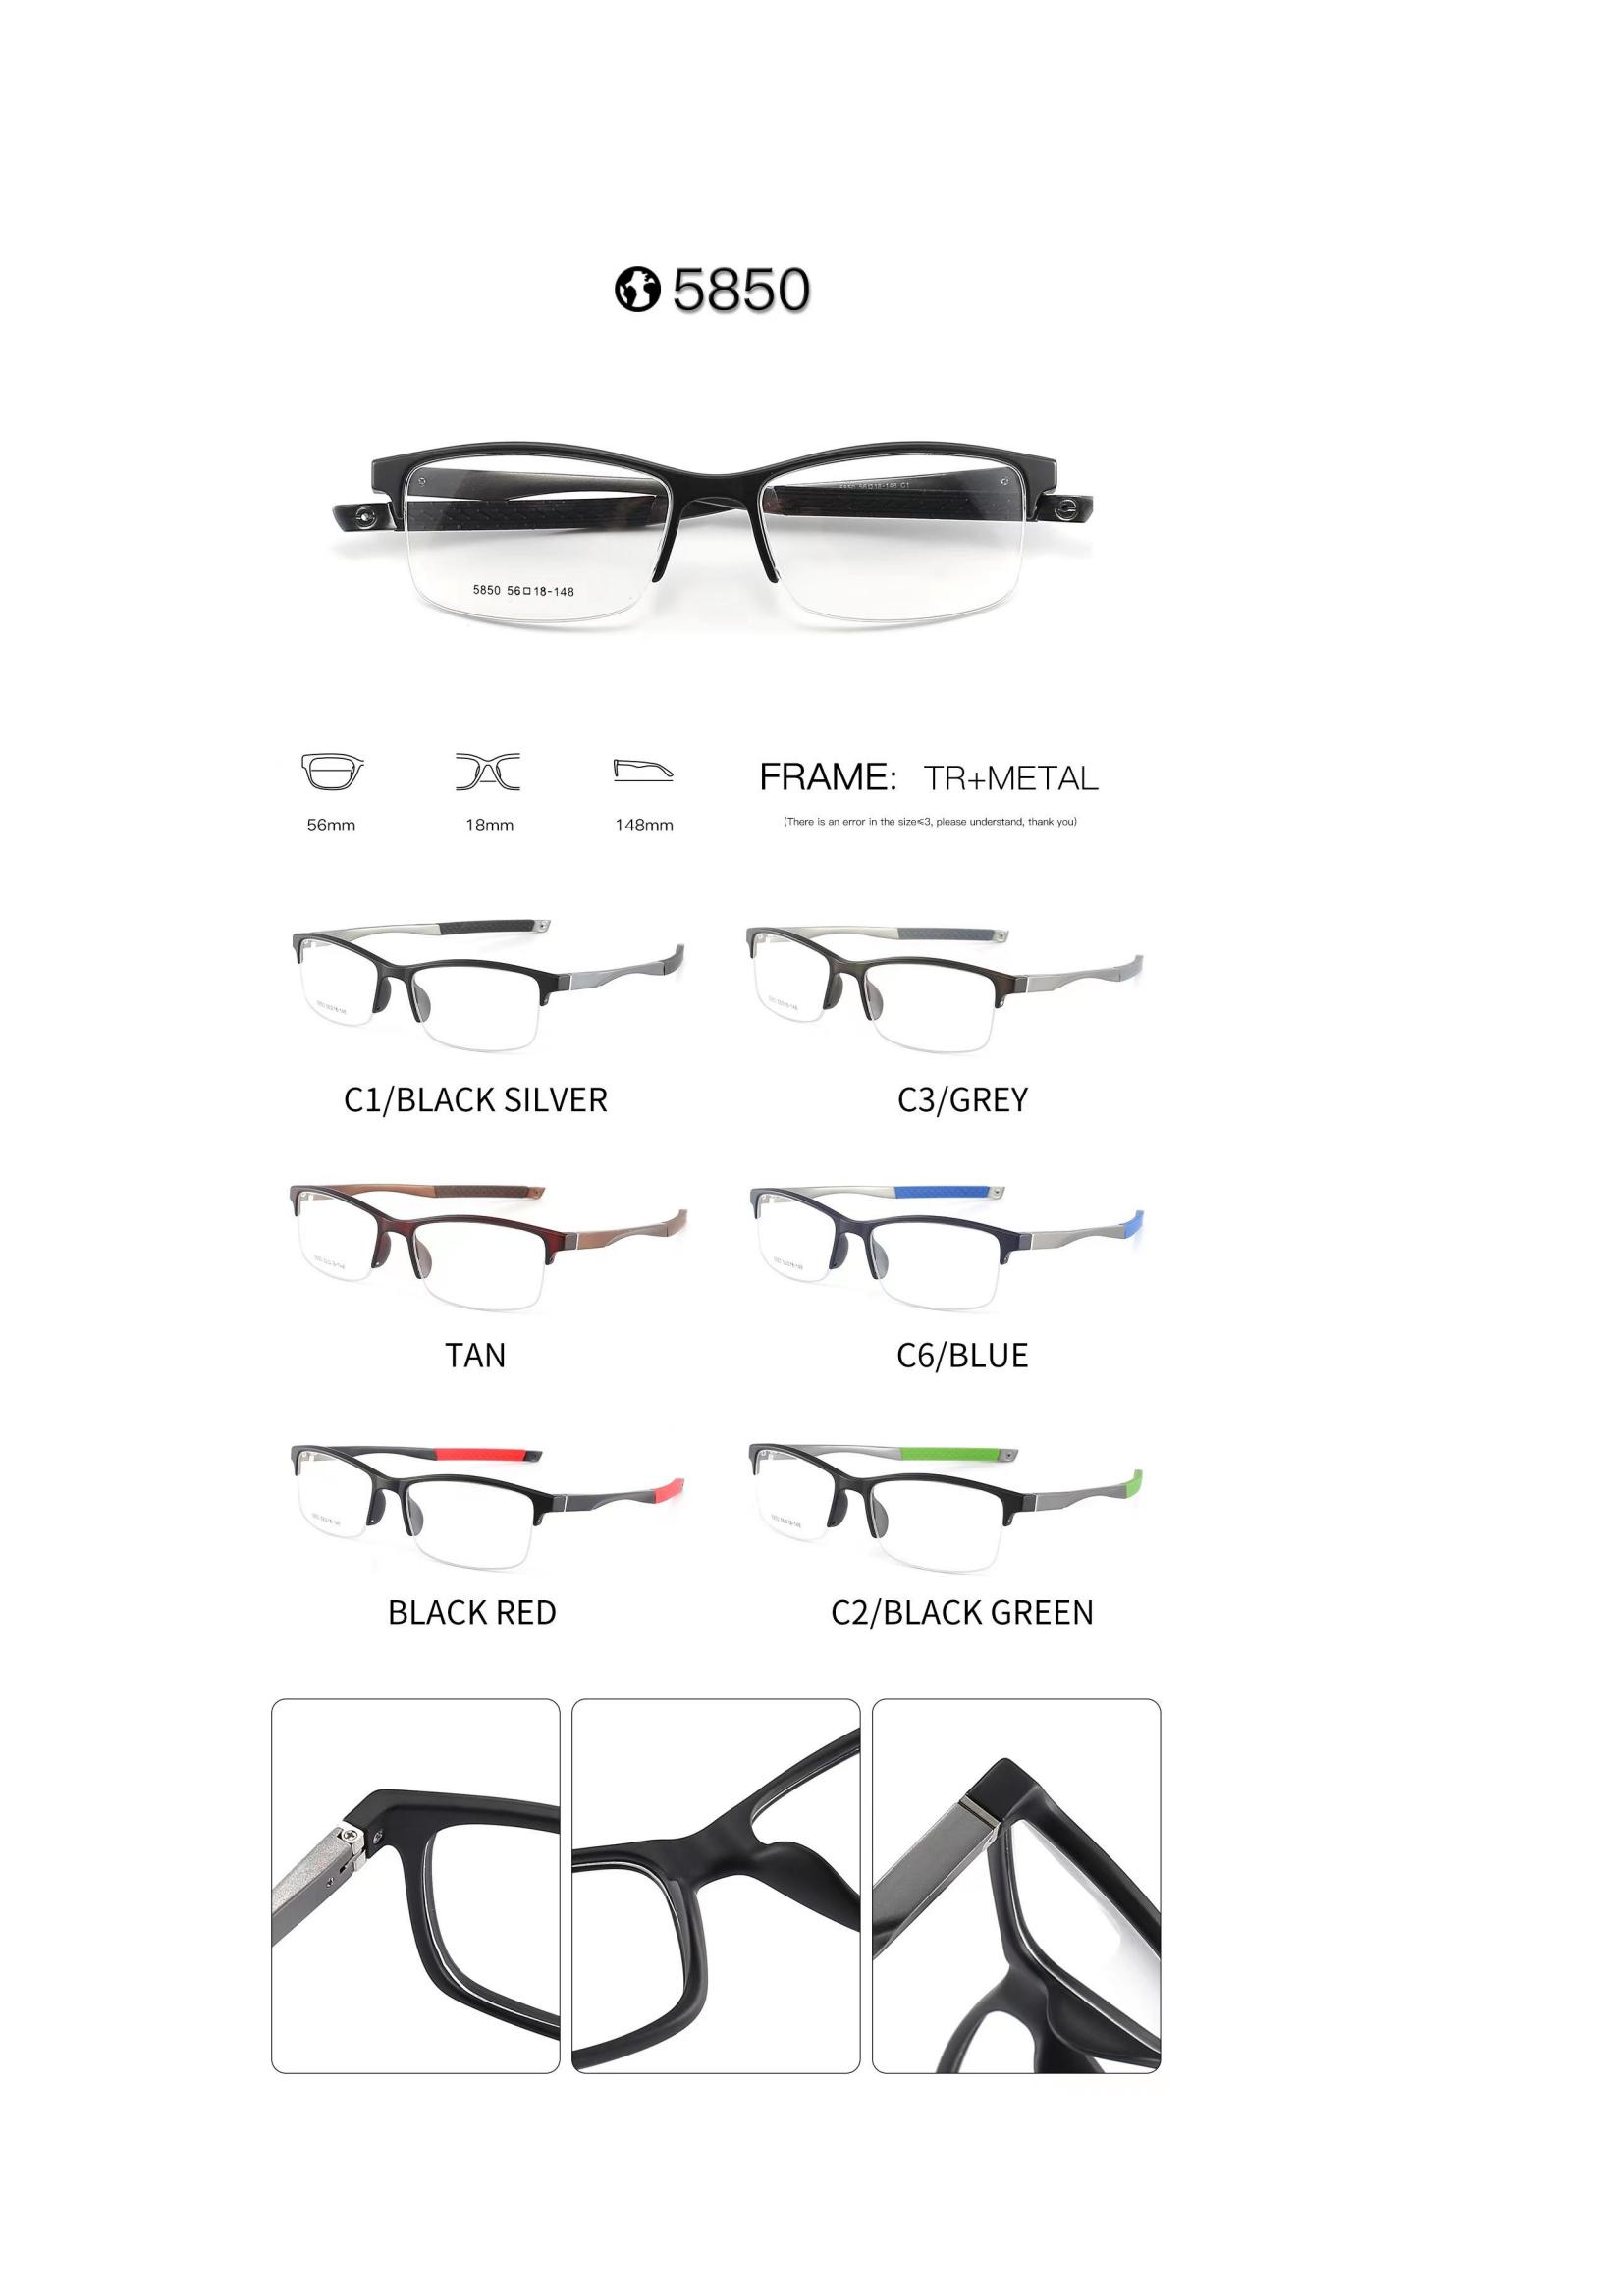 sport frames for glasses